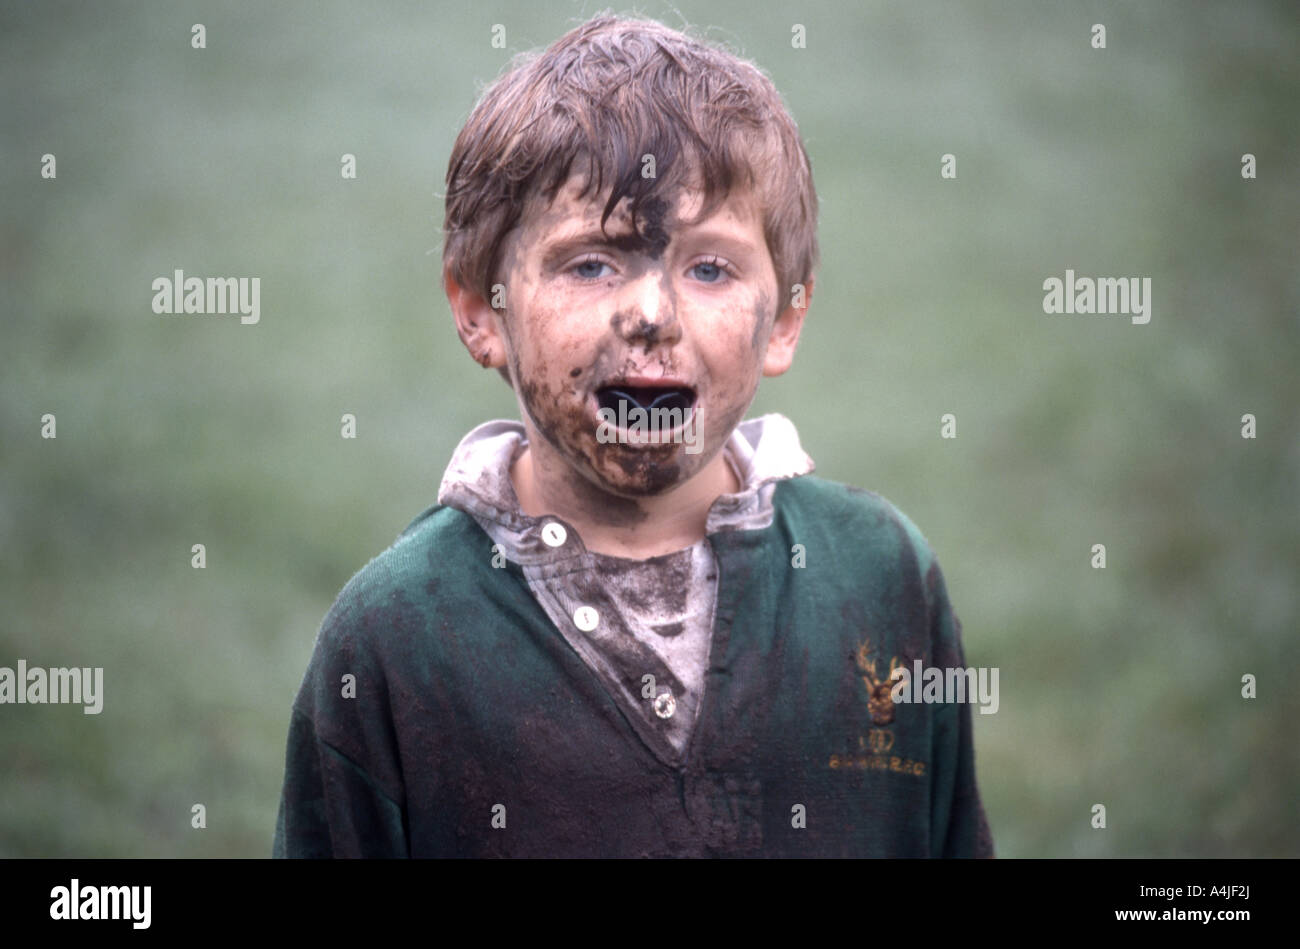 Jeune joueur de rugby avec visage boueux et porte-parole, Berkshire, Angleterre, Royaume-Uni Banque D'Images